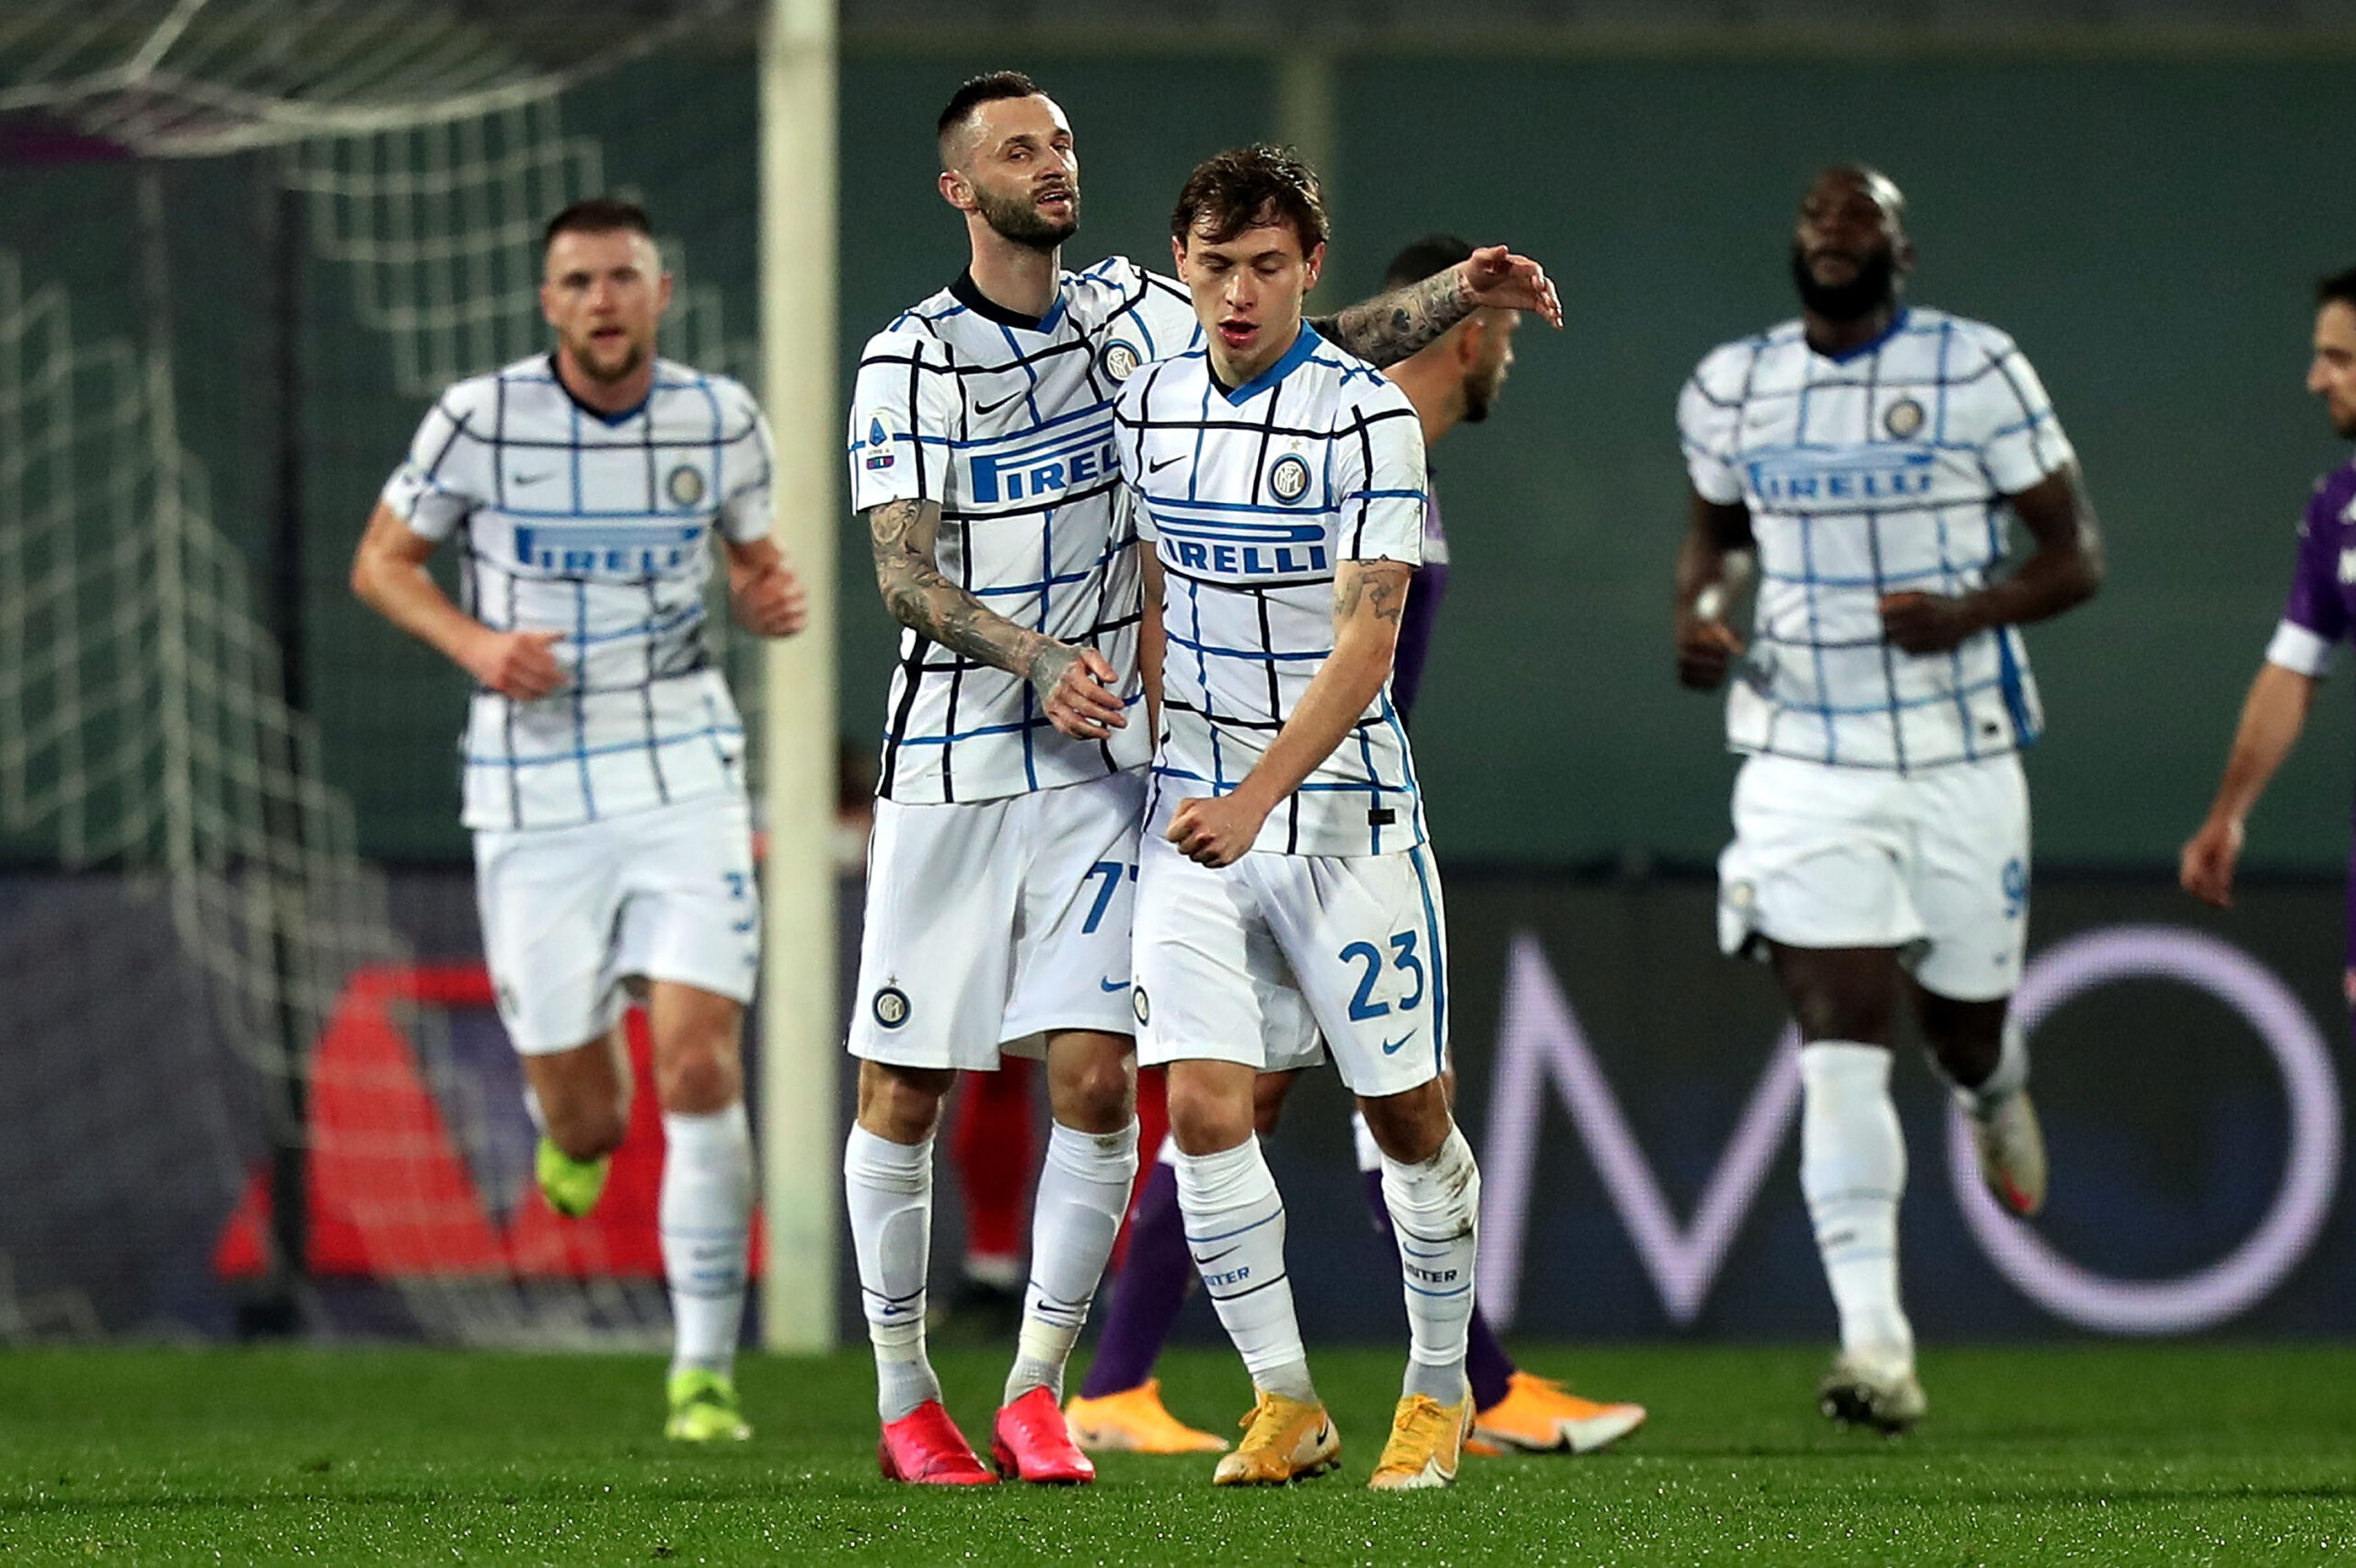 Inter feiert Sieg bei der Fiorentina und springt auf Platz 1!